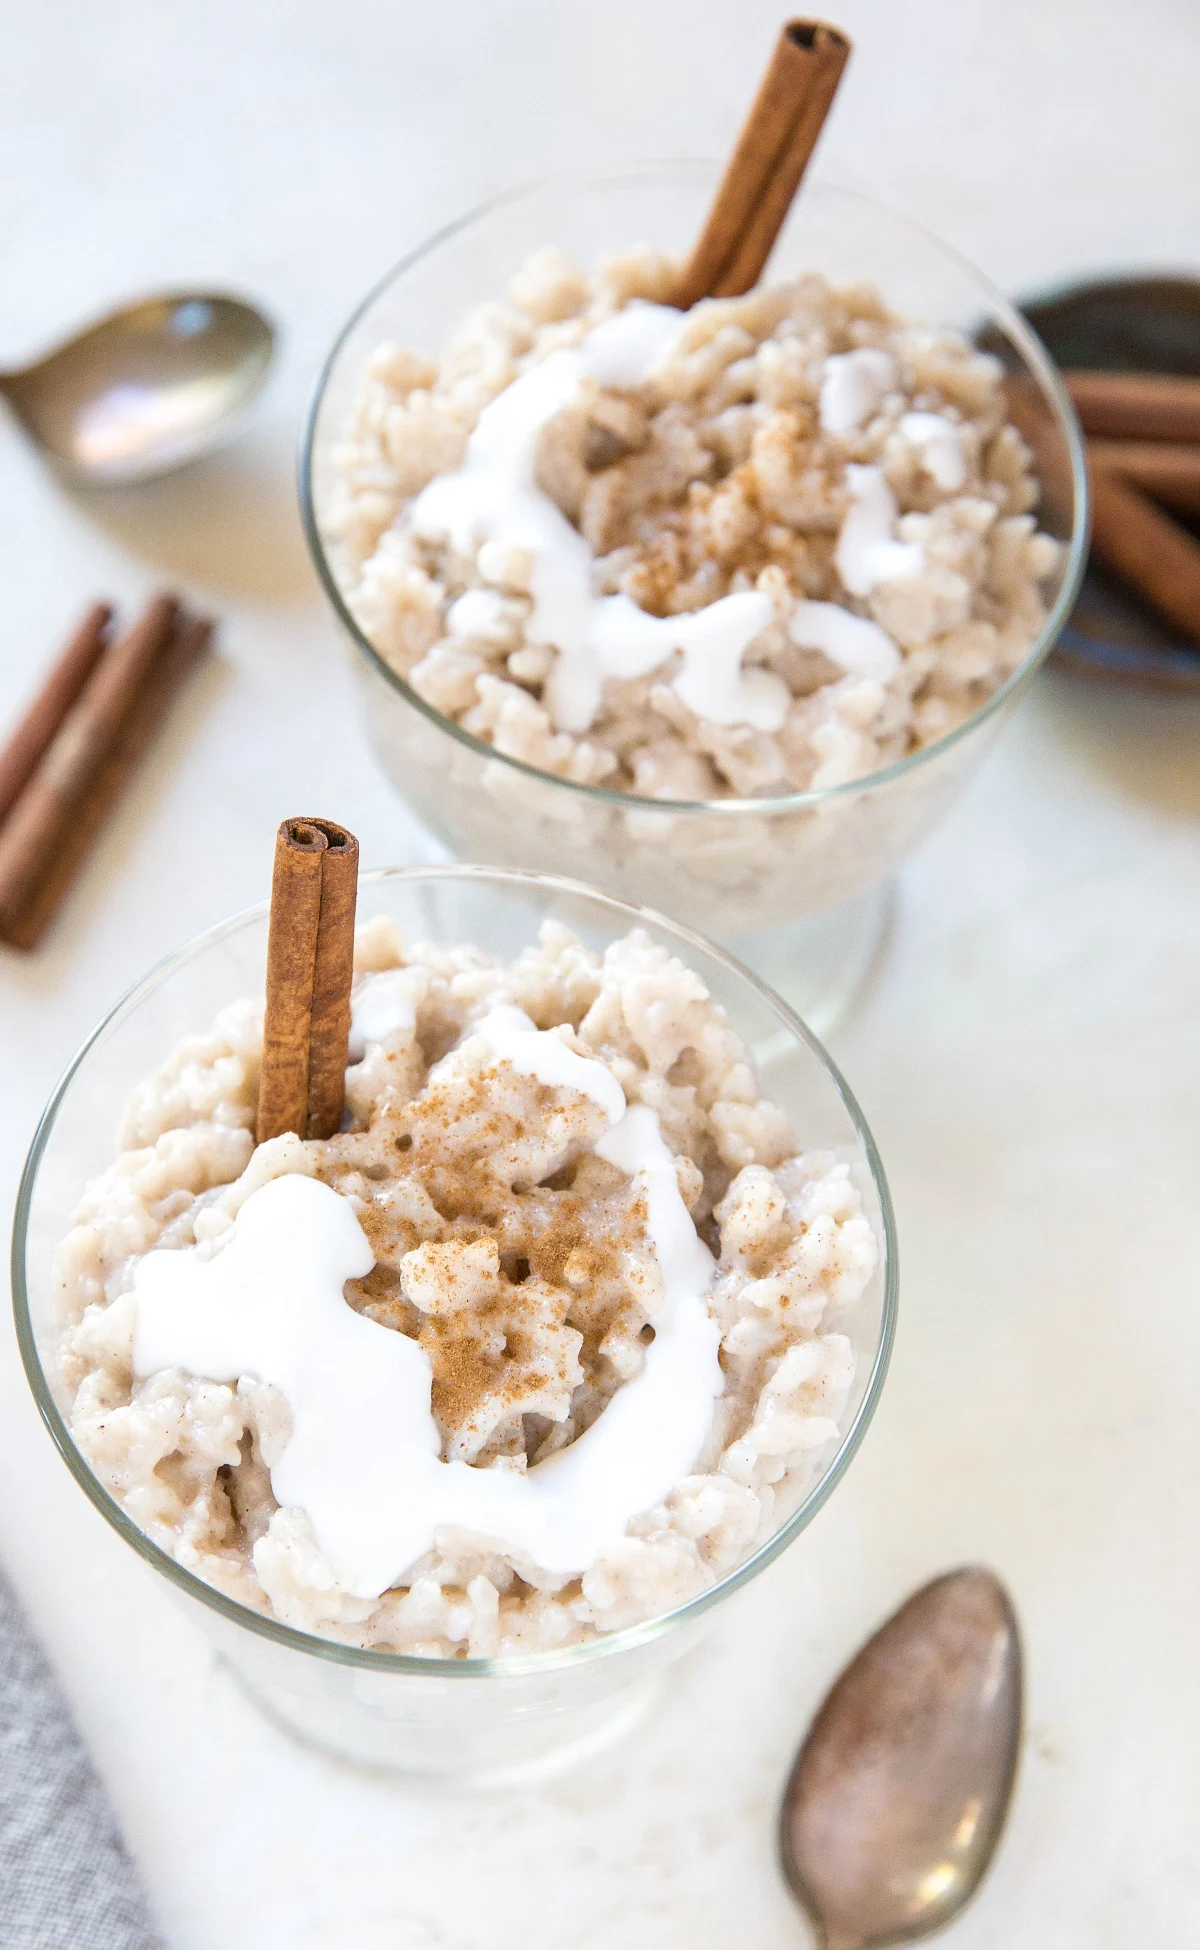 Instant Pot Rice Pudding Recipe made dairy-free using coconut milk (arroz con leche de coco)